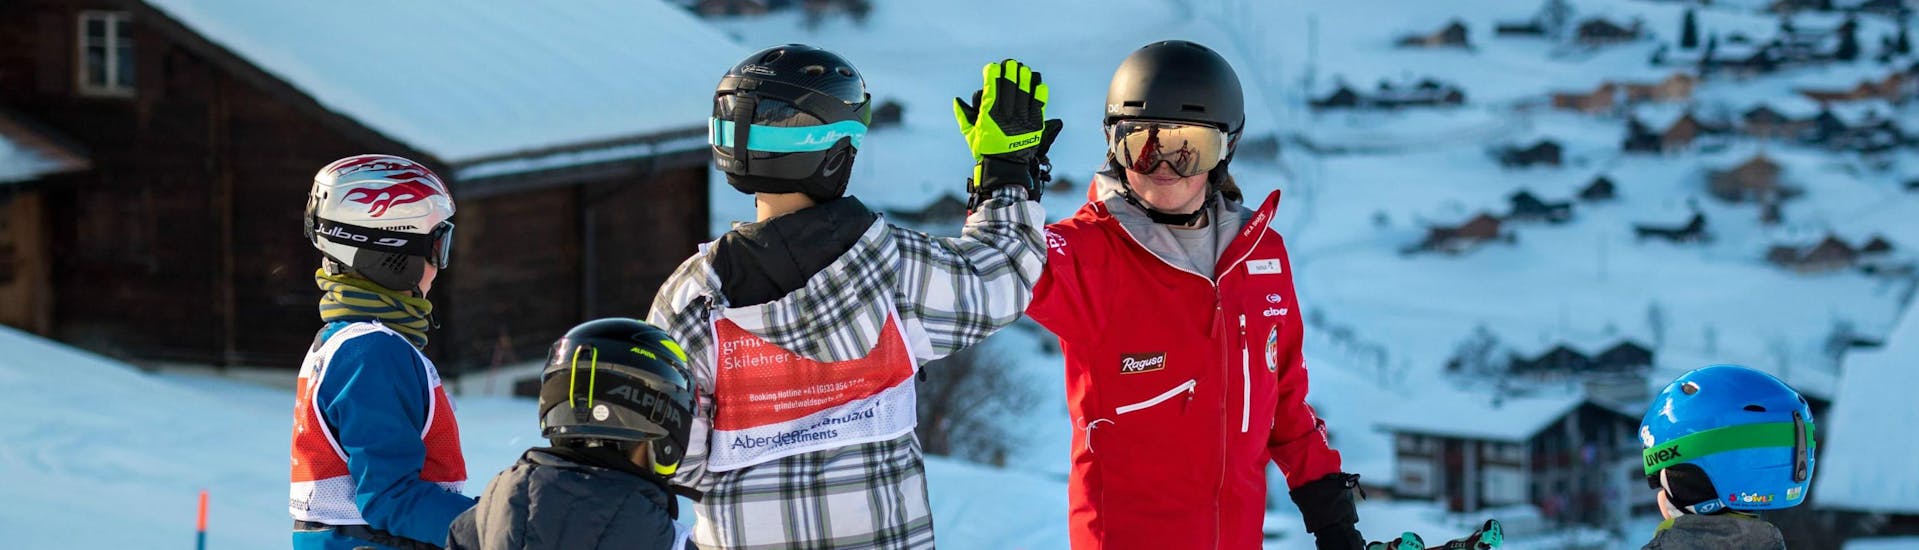 Een groep jonge skiërs vermaakt zich tijdens hun kinderskilessen voor halfgevorderden met de Grindelwald Ski School en geven hun instructeur een high-five.